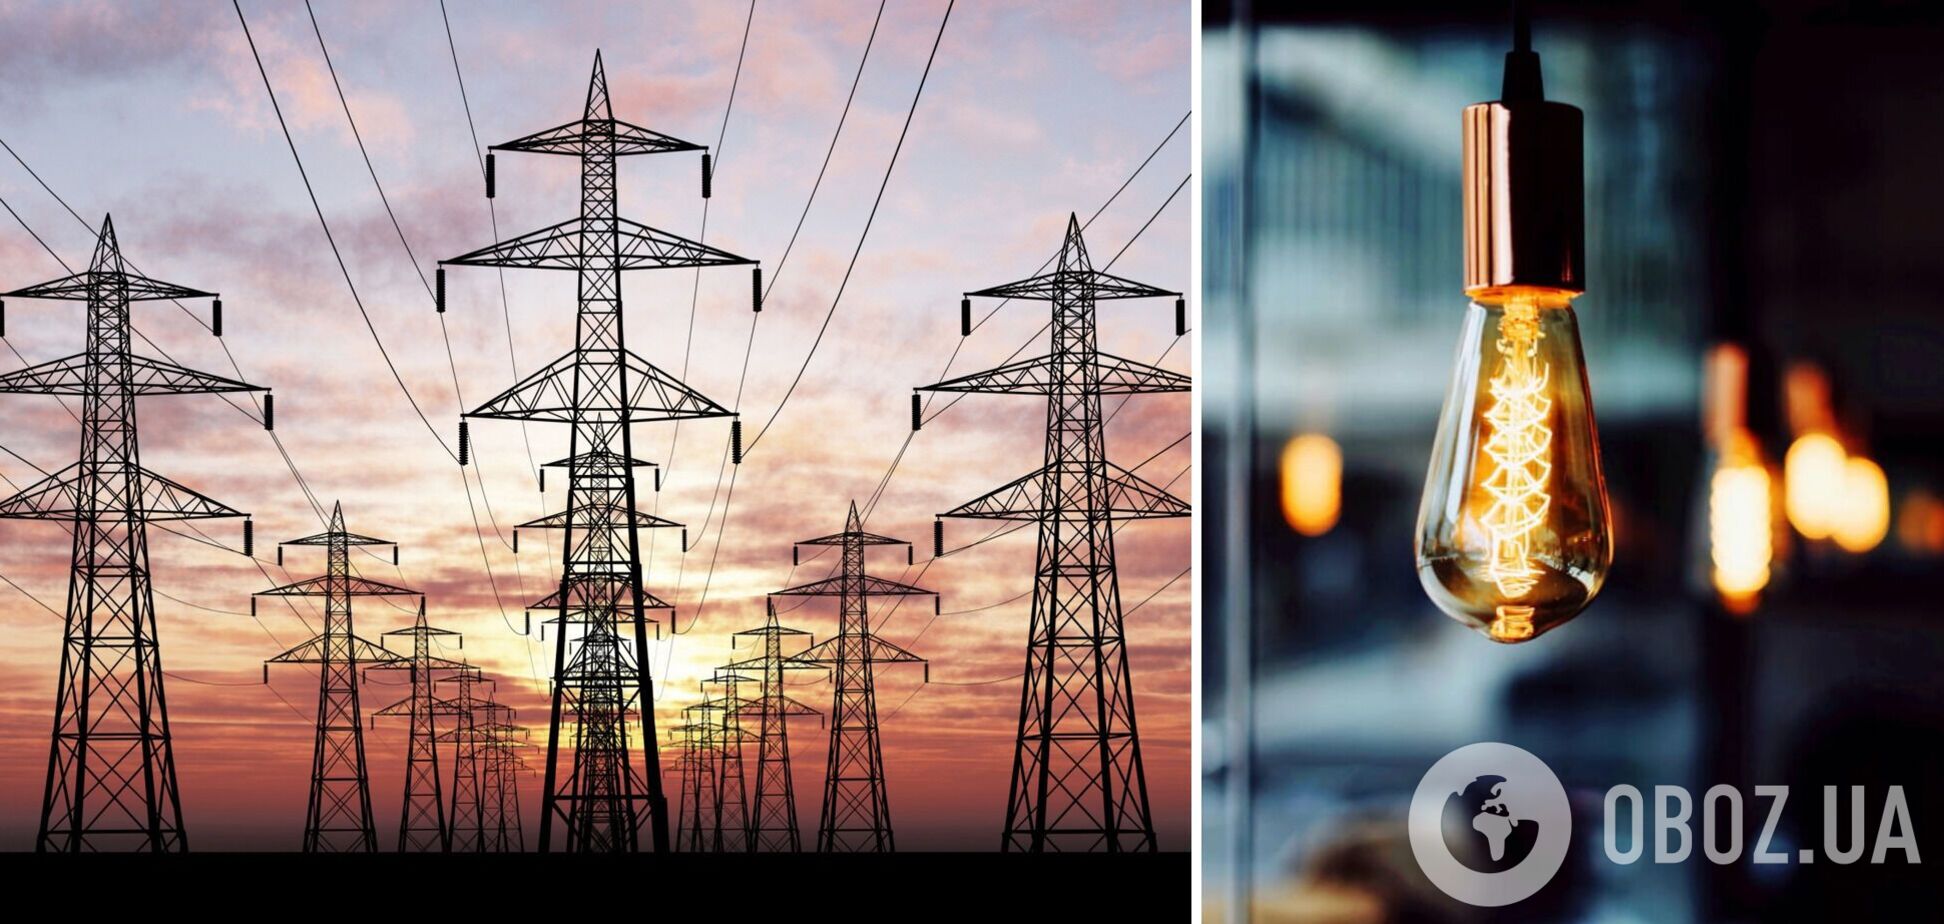 Експорт струму може допомогти зберегти пільгові тарифи на електрику для населення, – Оржель